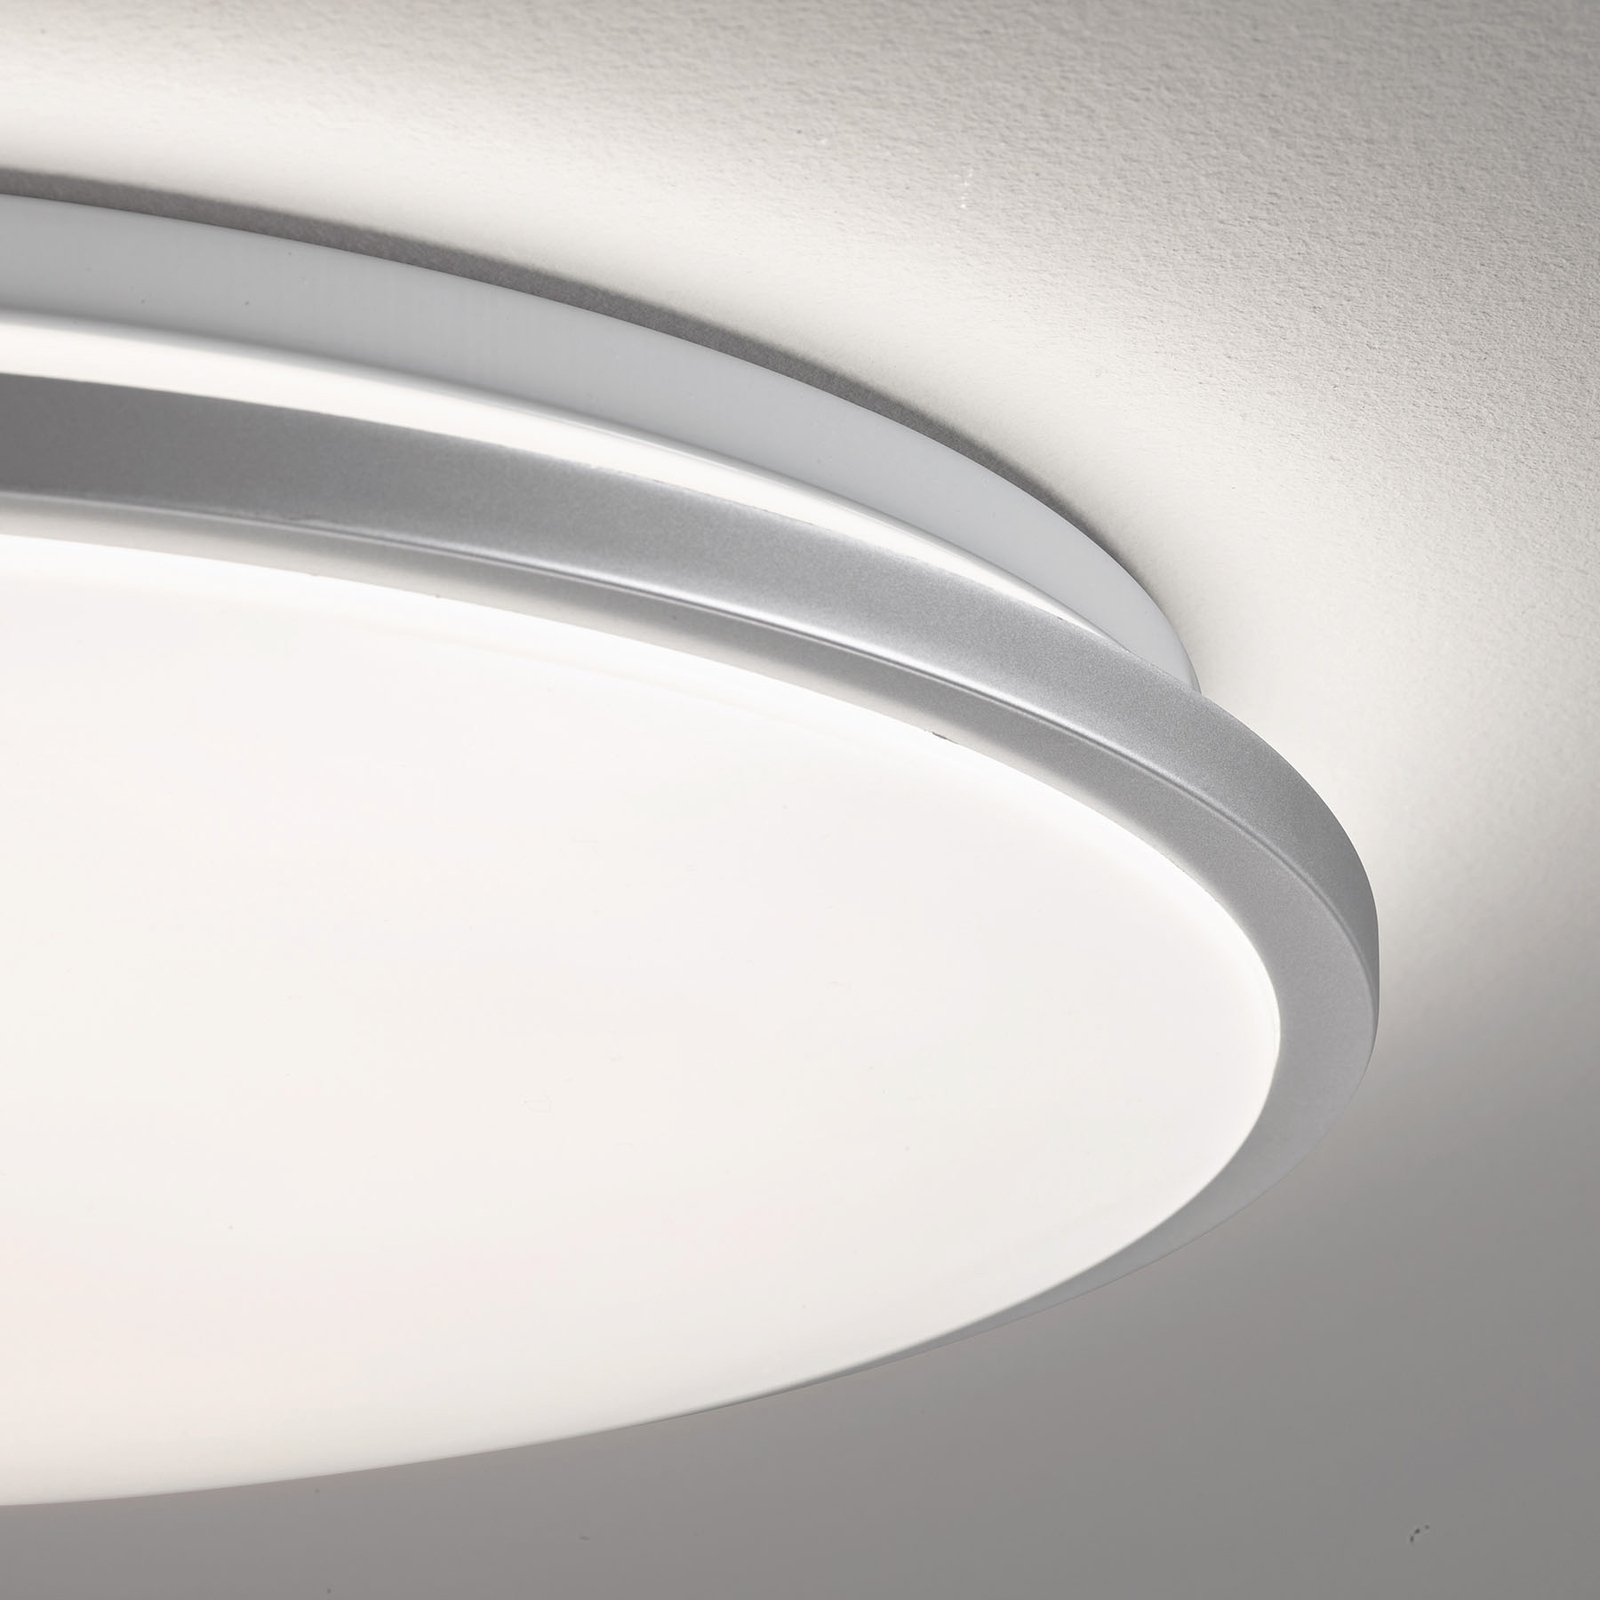 Jaso LED-taklampe, dimbar, Ø 40 cm, sølv